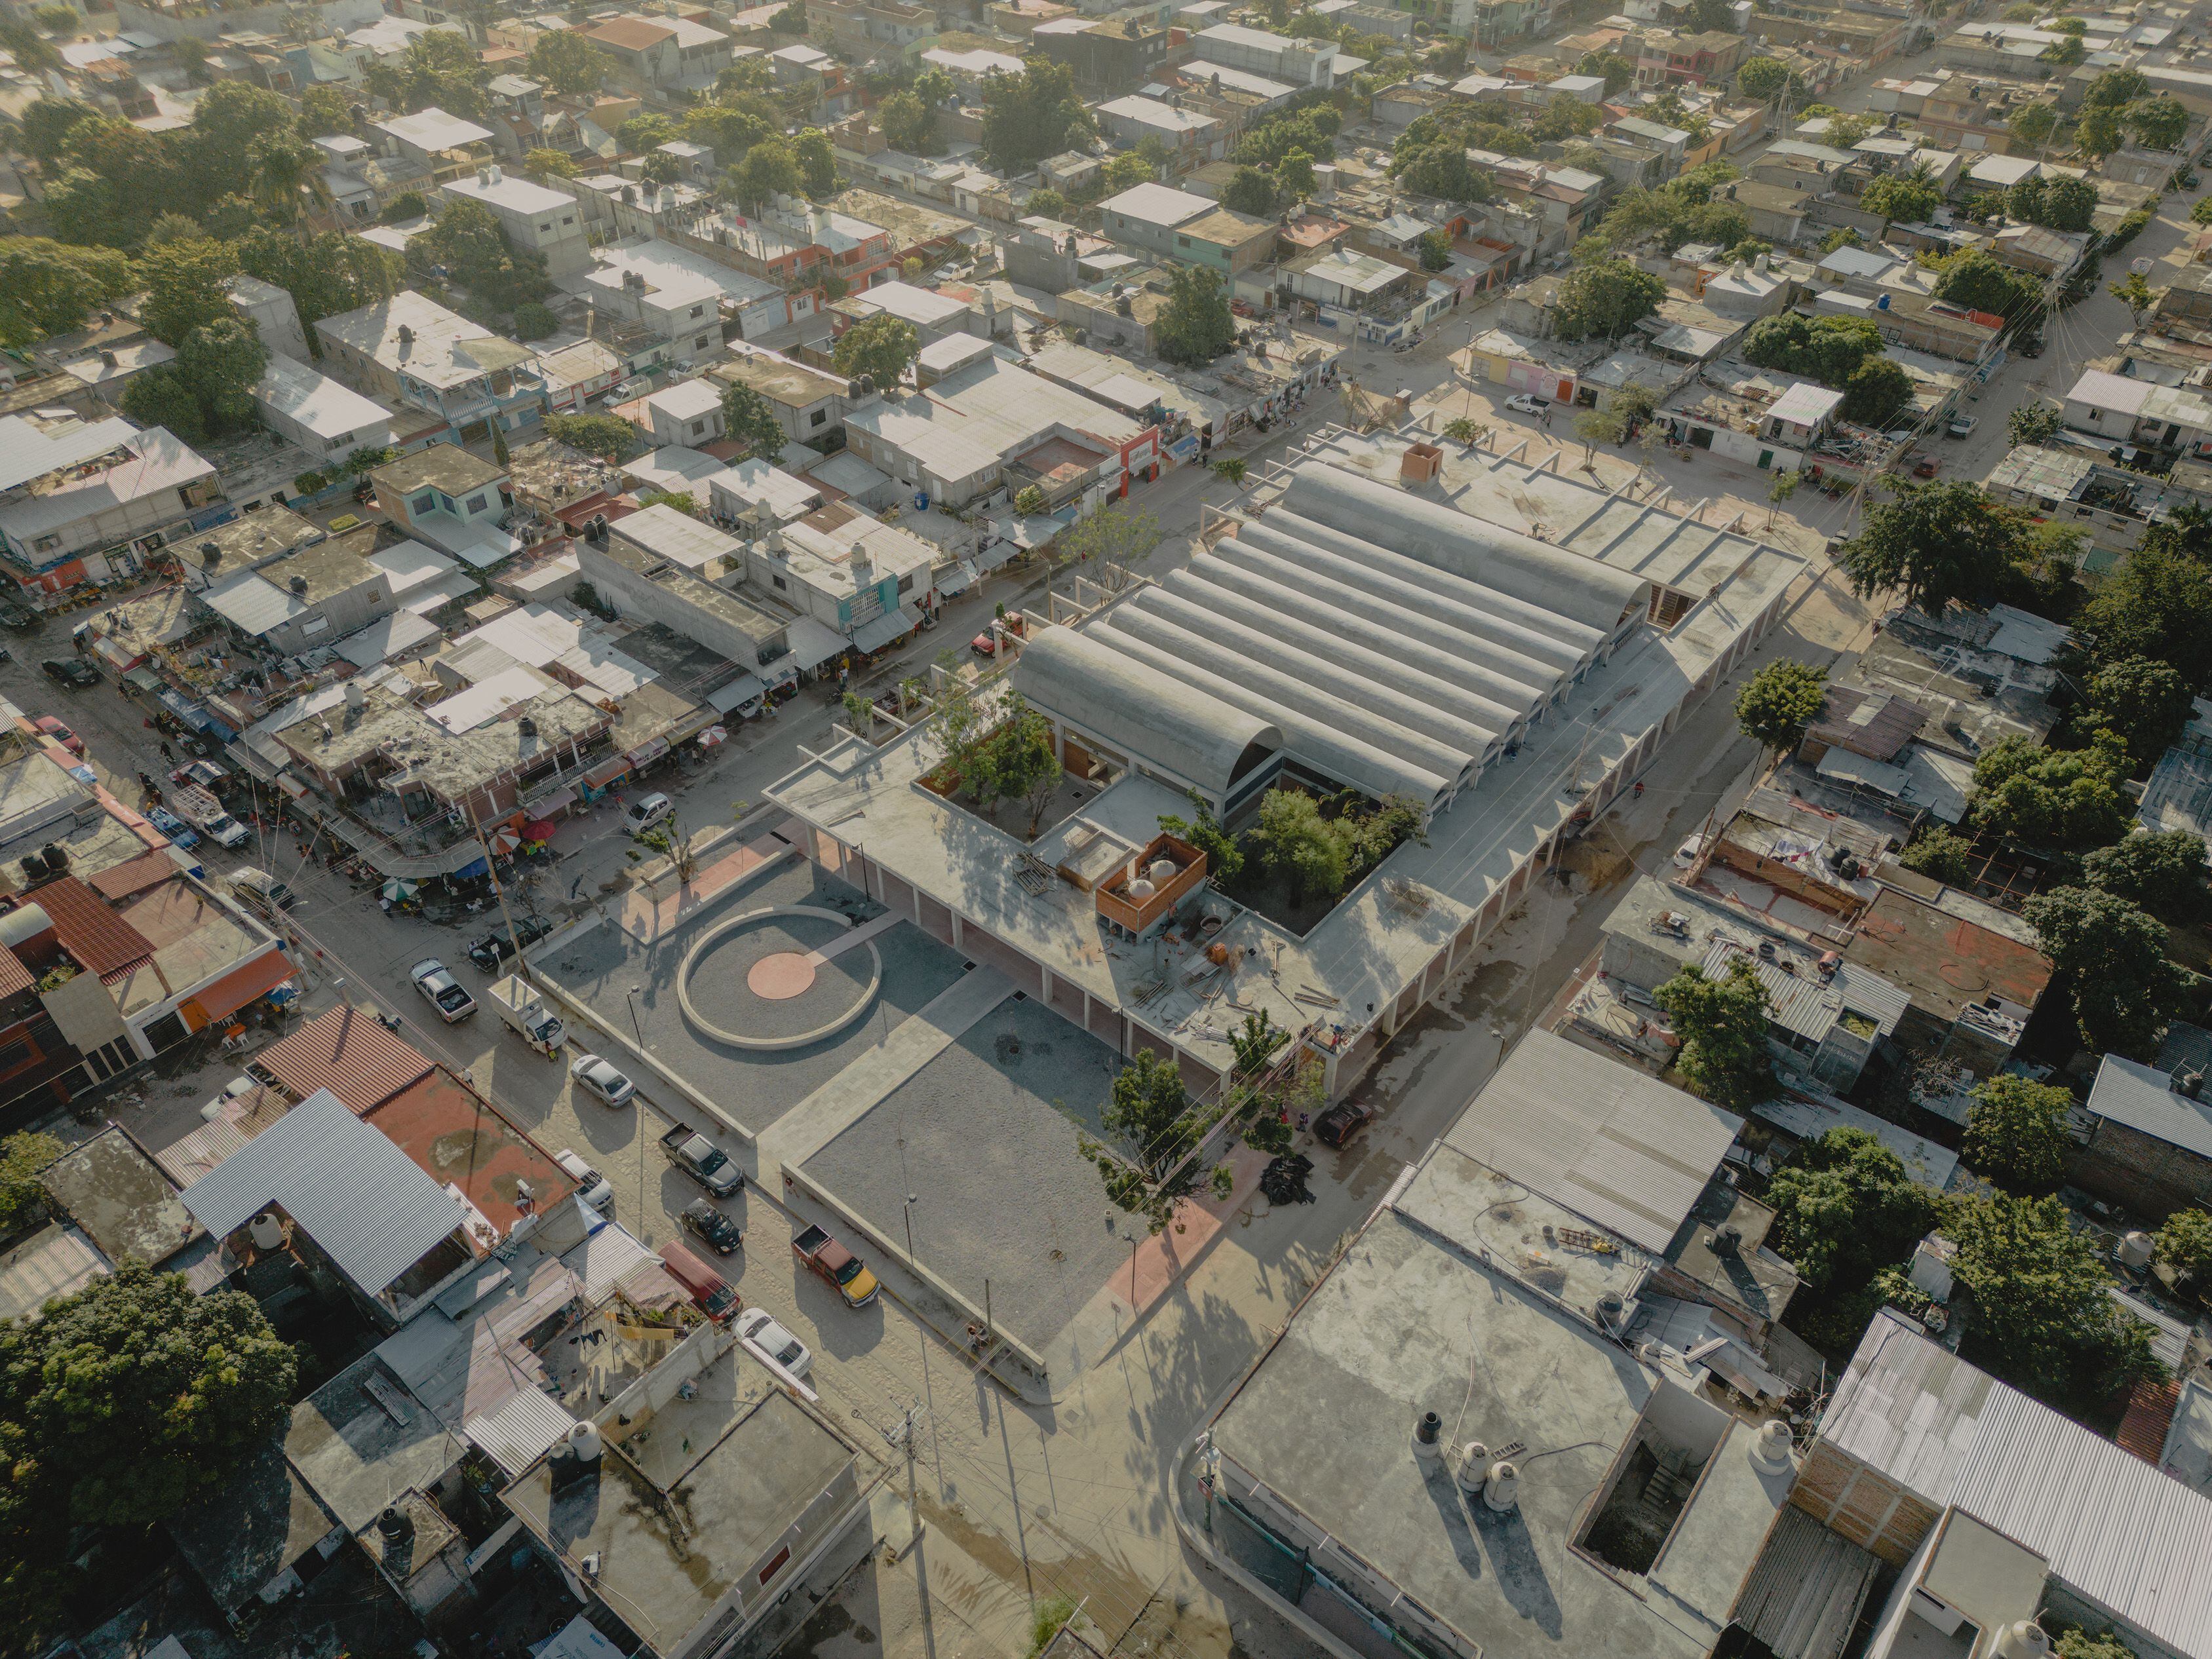 Vista aérea del mercado 22 de noviembre, en Tuxtla Gutiérrez, Chiapas.